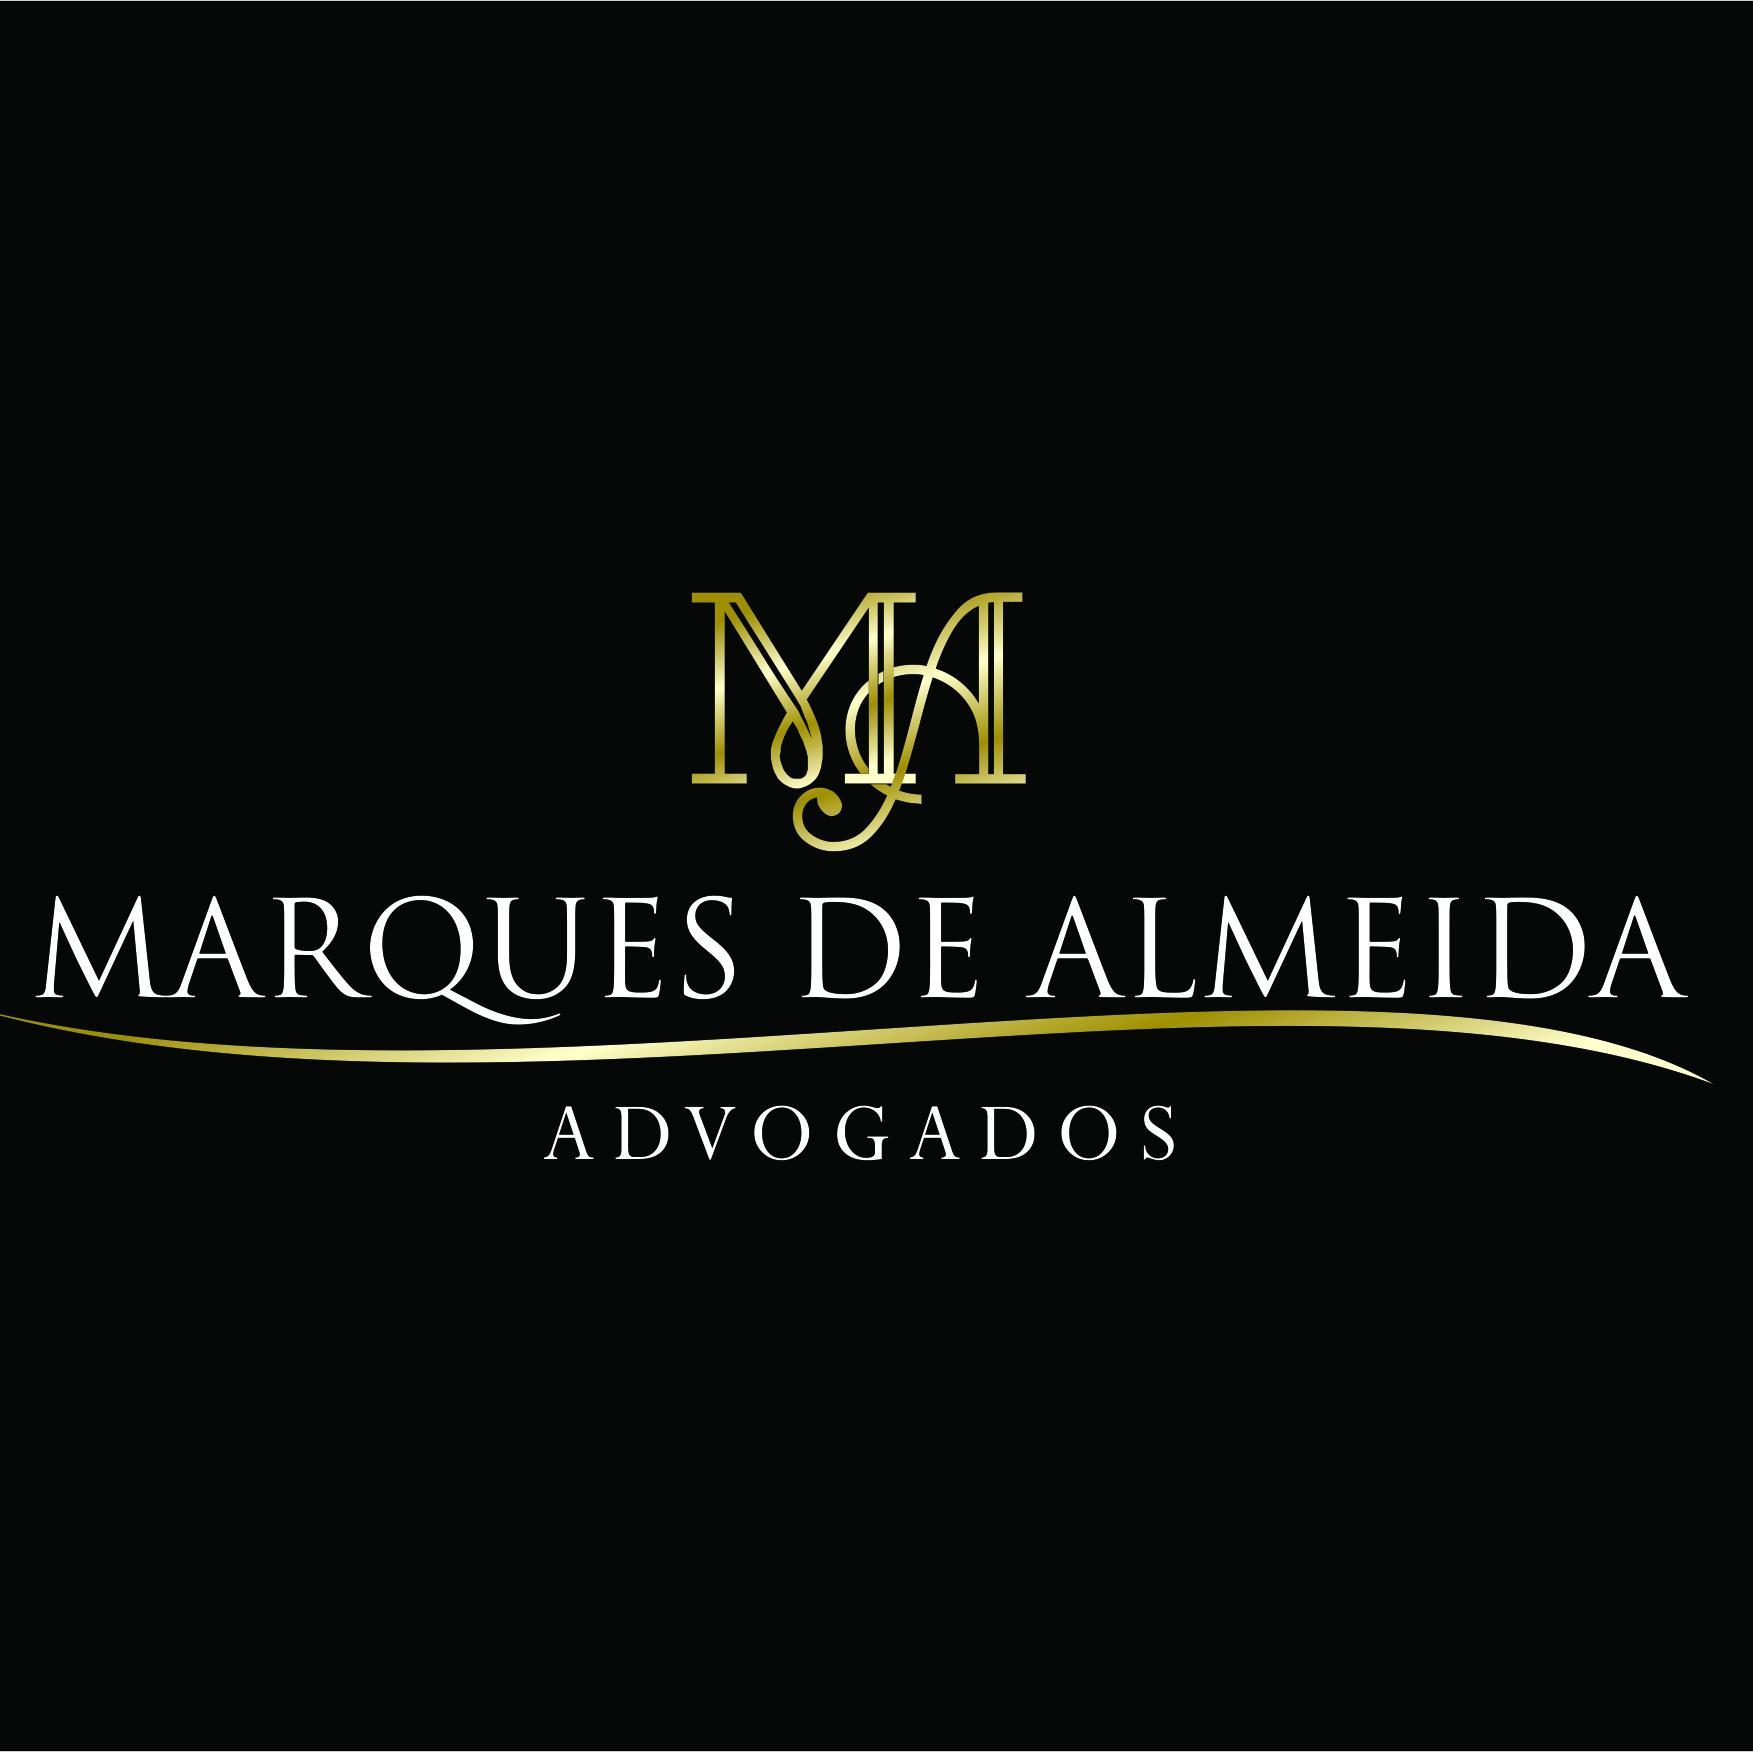 Twitter oficial do Escritório Marques de Almeida Advogados. Atendimento especializado em Direito Empresarial.